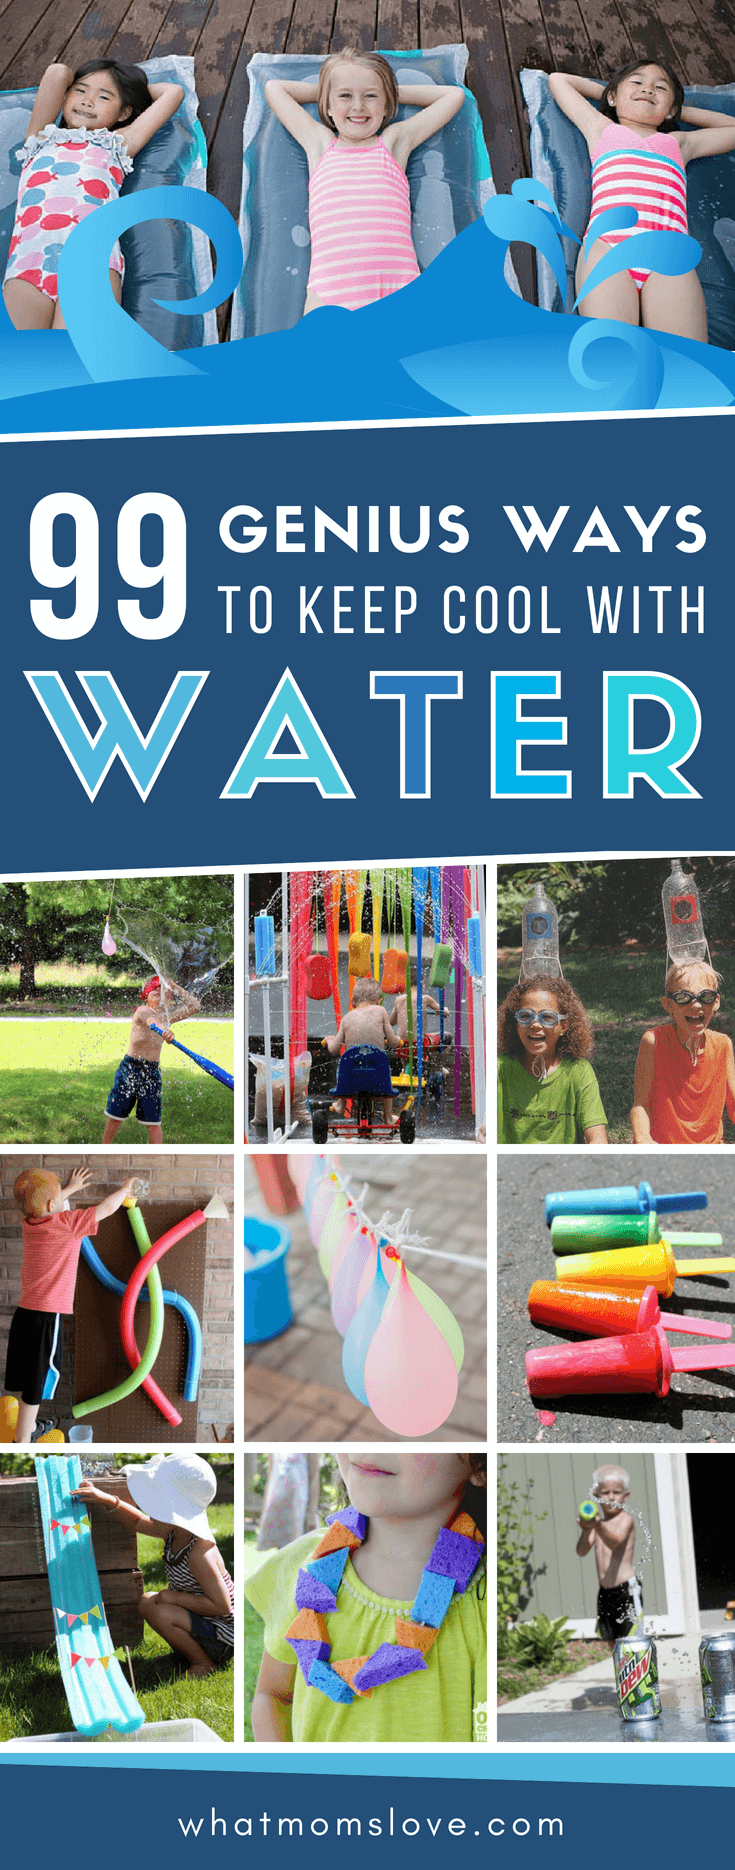 water activities for teenagers